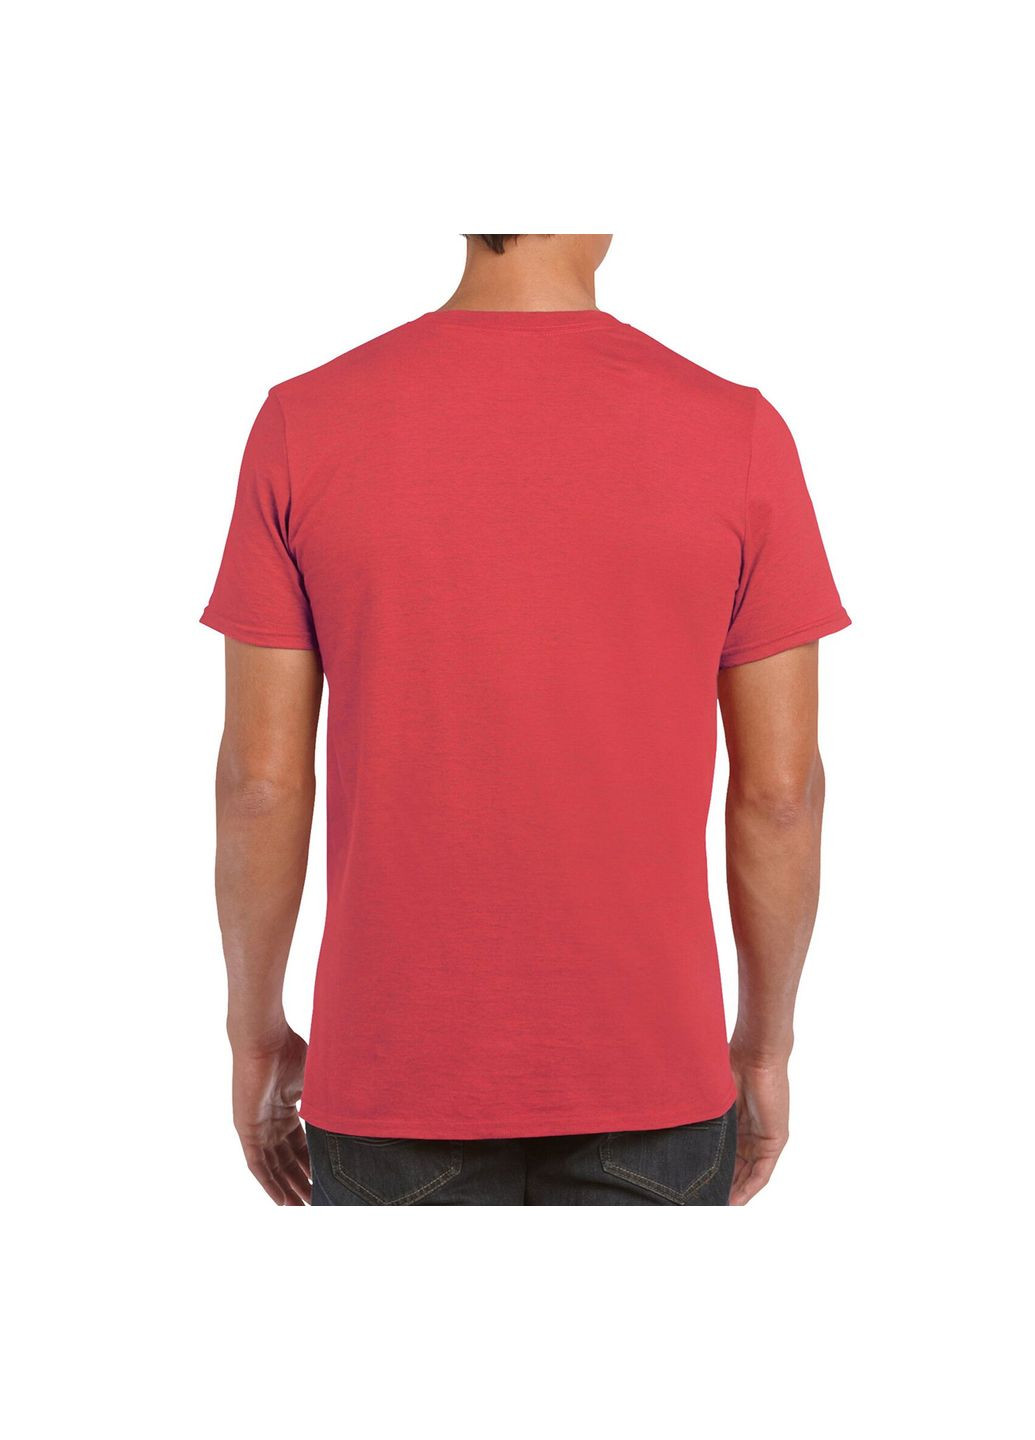 Червона футболка чоловіча однотонна червона 64000-193c з коротким рукавом Gildan Softstyle